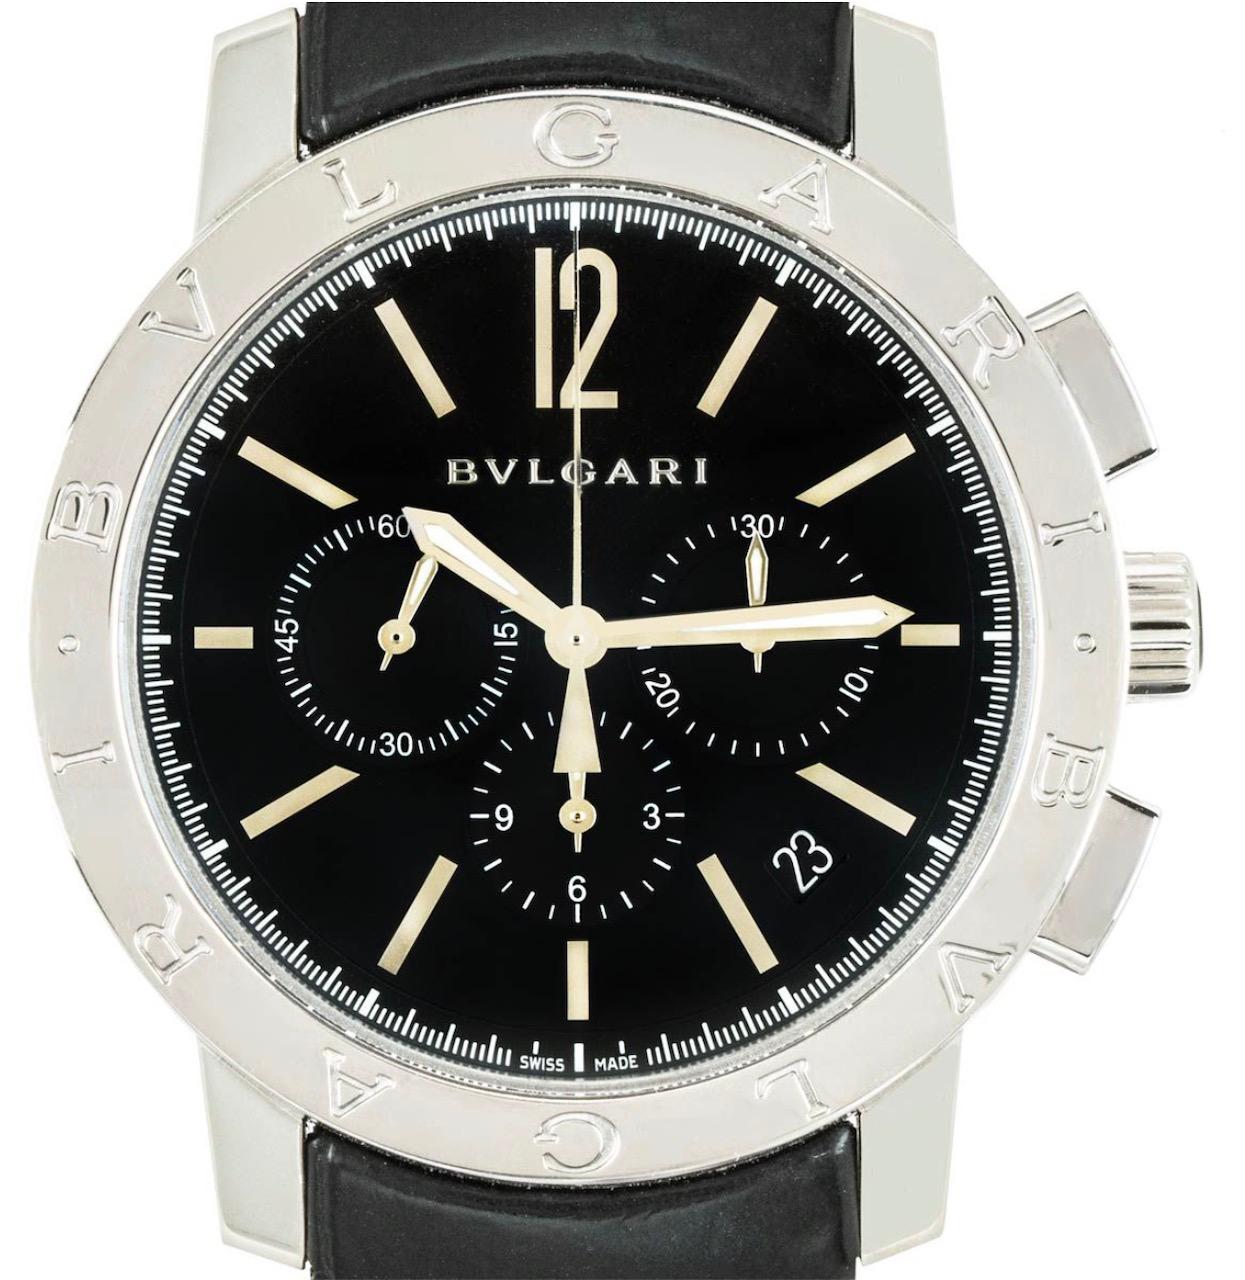 Montre-bracelet chronographe en acier inoxydable de 41 mm pour homme, signée Bvlgari. Il présente un cadran noir avec des index appliqués, des compteurs de chronographe et une lunette fixe en acier inoxydable sertie du logo Bvlgari. La montre est